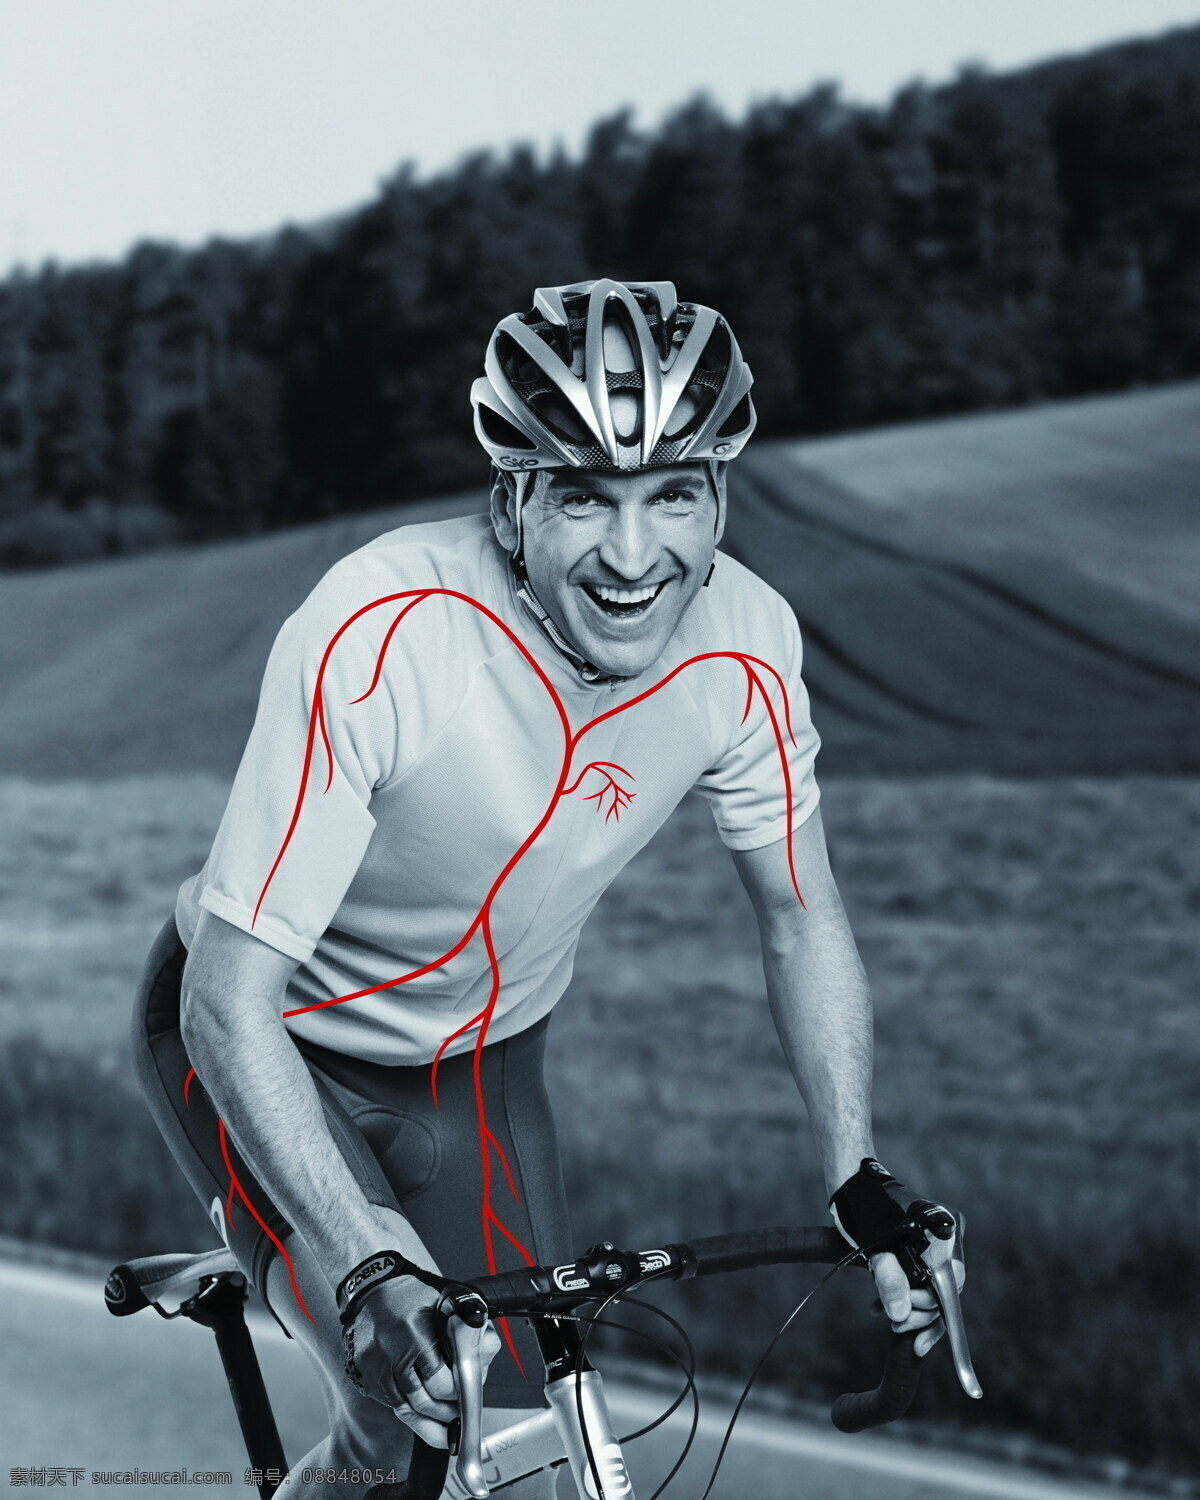 强健 心血管 功能 运动 赛车手 自行车 单车 越野 血液 血液循环 健康 心脏 男性男人 人物图库